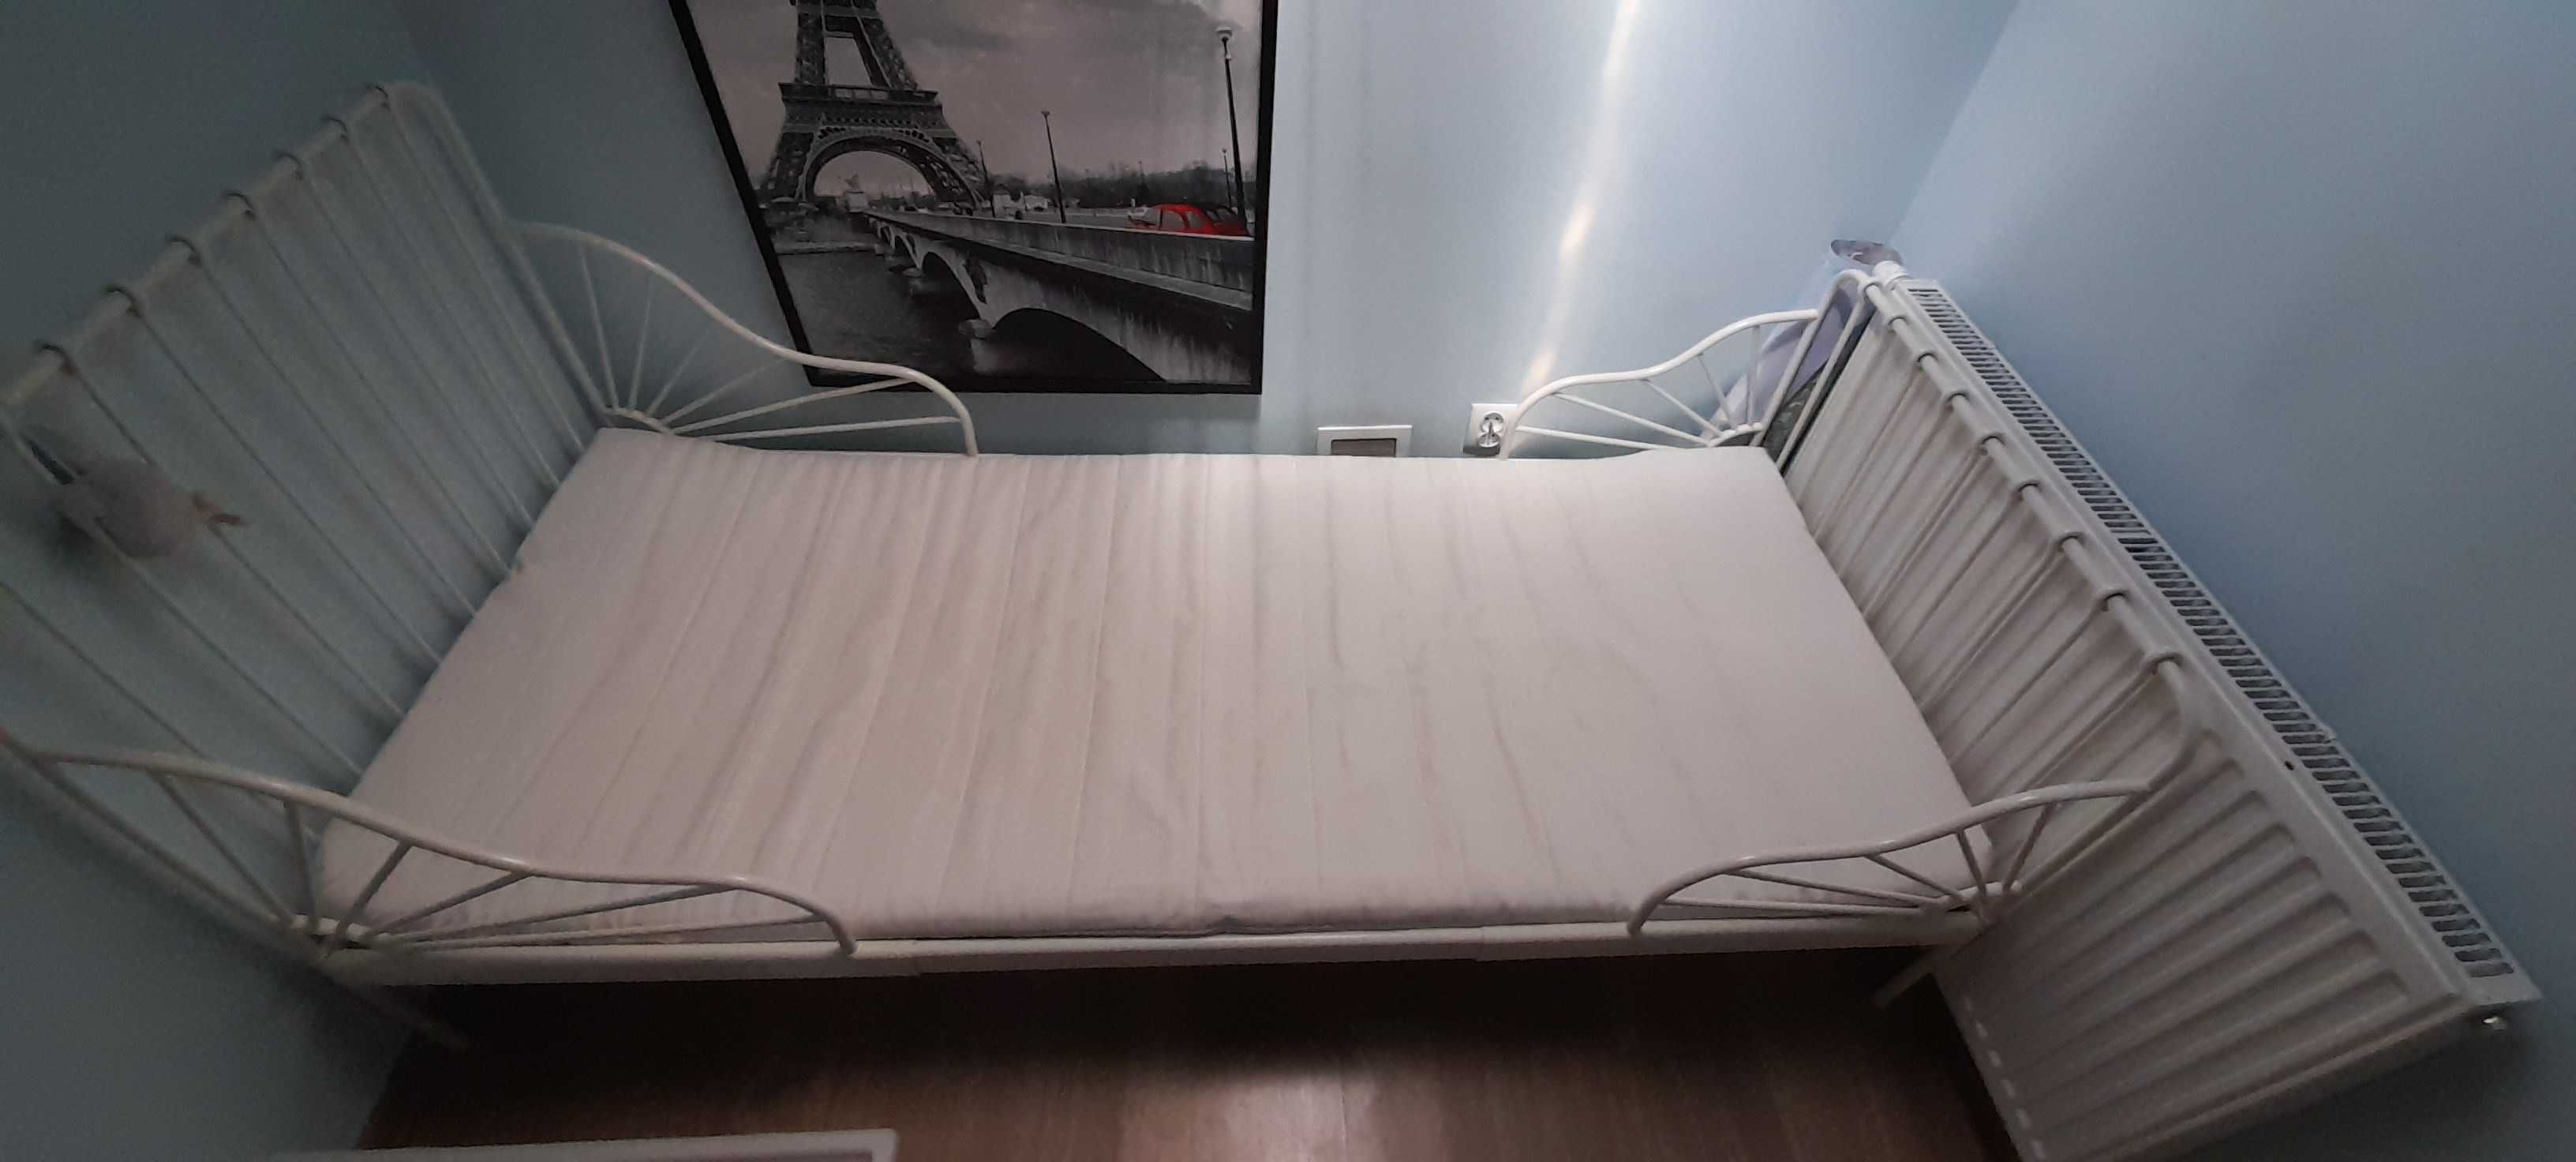 Łóżko metalowe czarne i białe